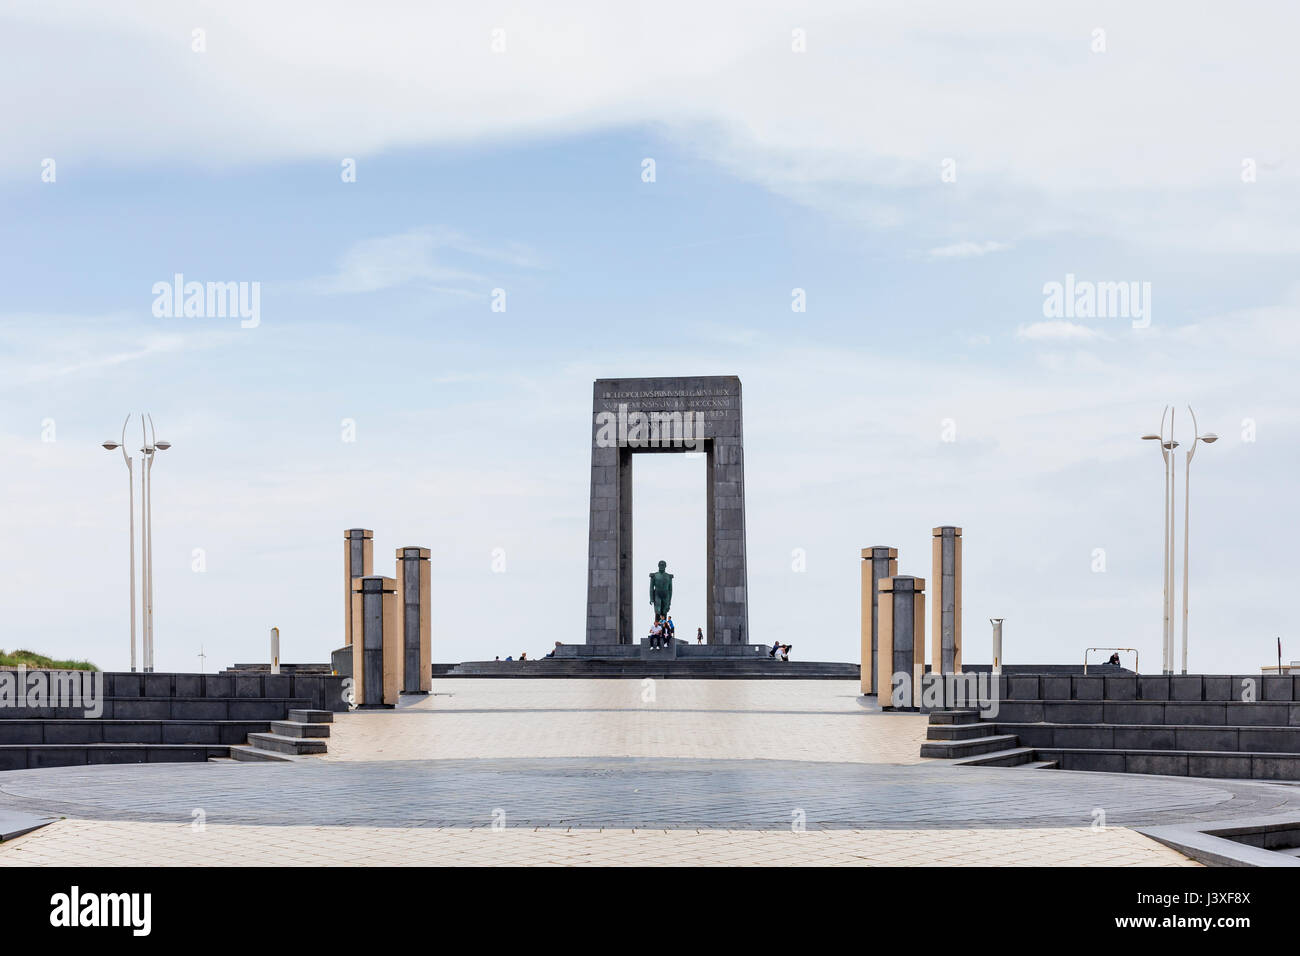 De Panne, Belgio - Monumento di Re Leopoldo I a De Panne. È stato a De Panne che il principe Leopold von Saksen-Coburg-Gotha primo entrato di recente Foto Stock